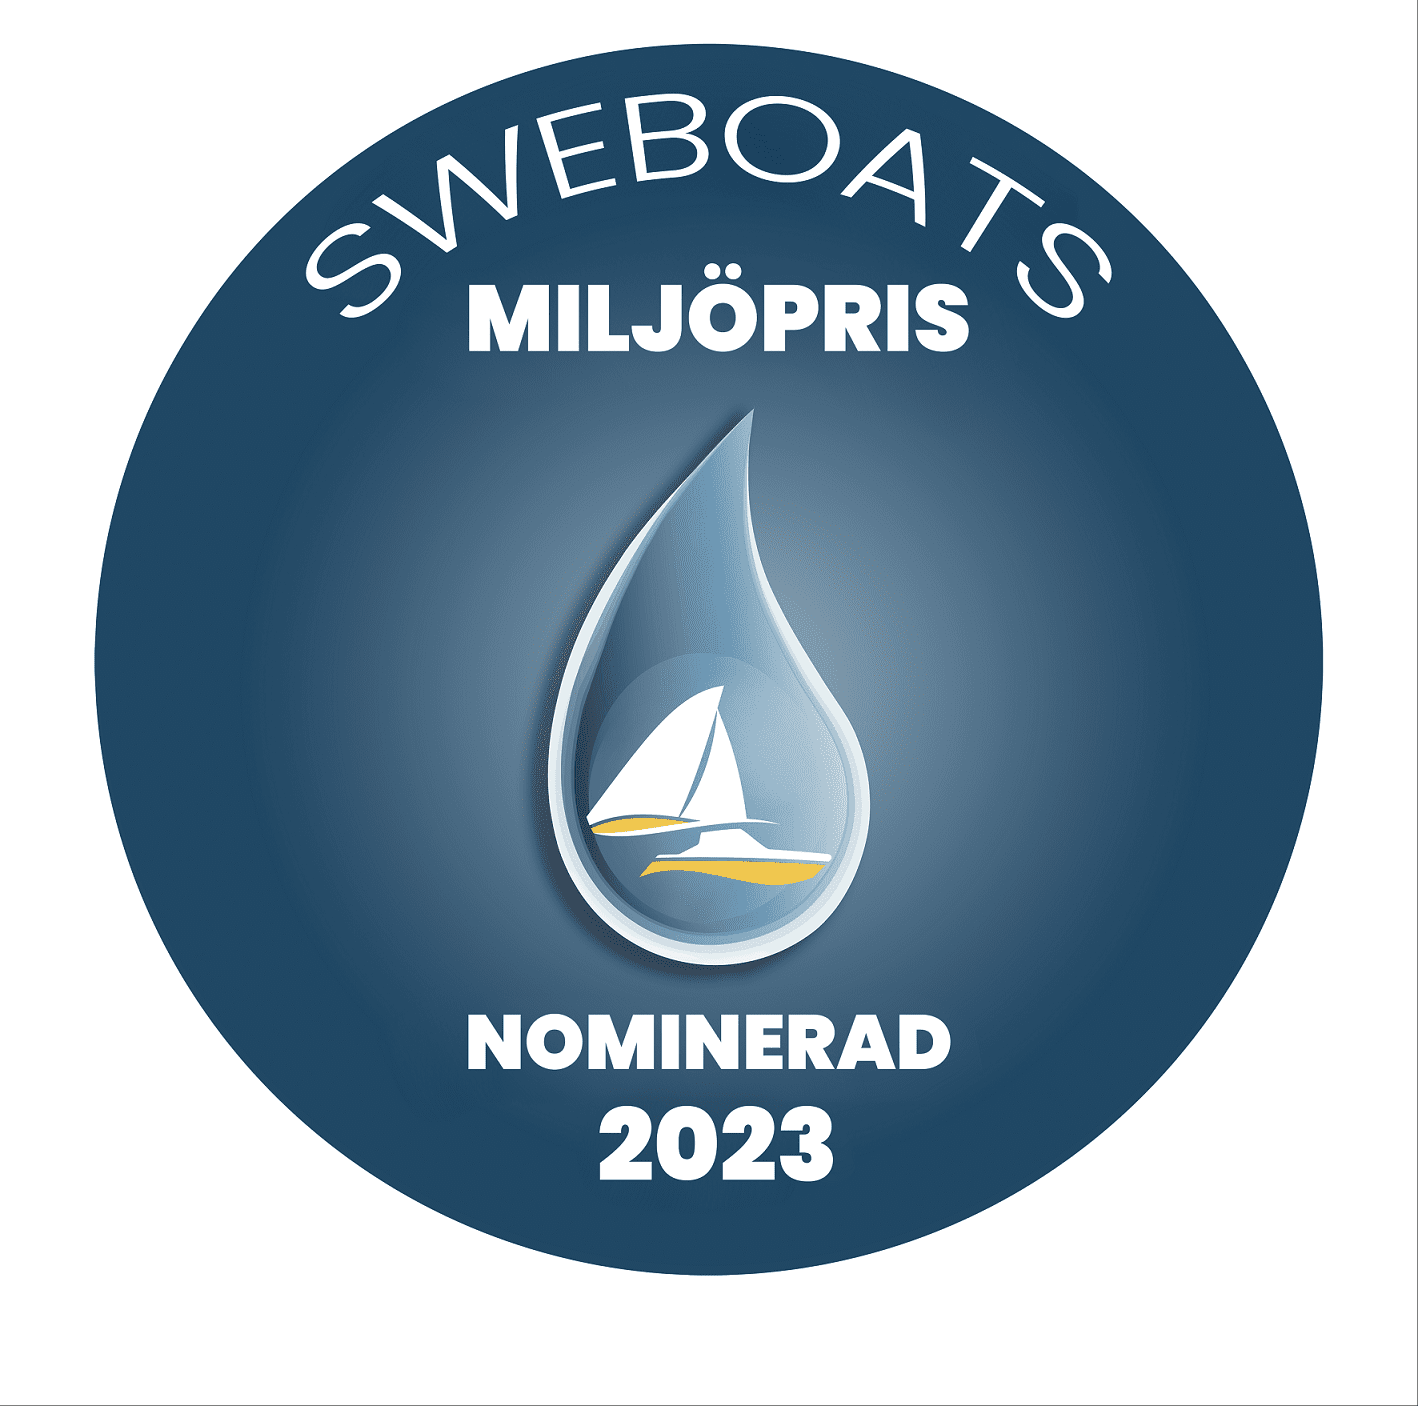 Nomineringarna till Sweboats Miljöpris 2023